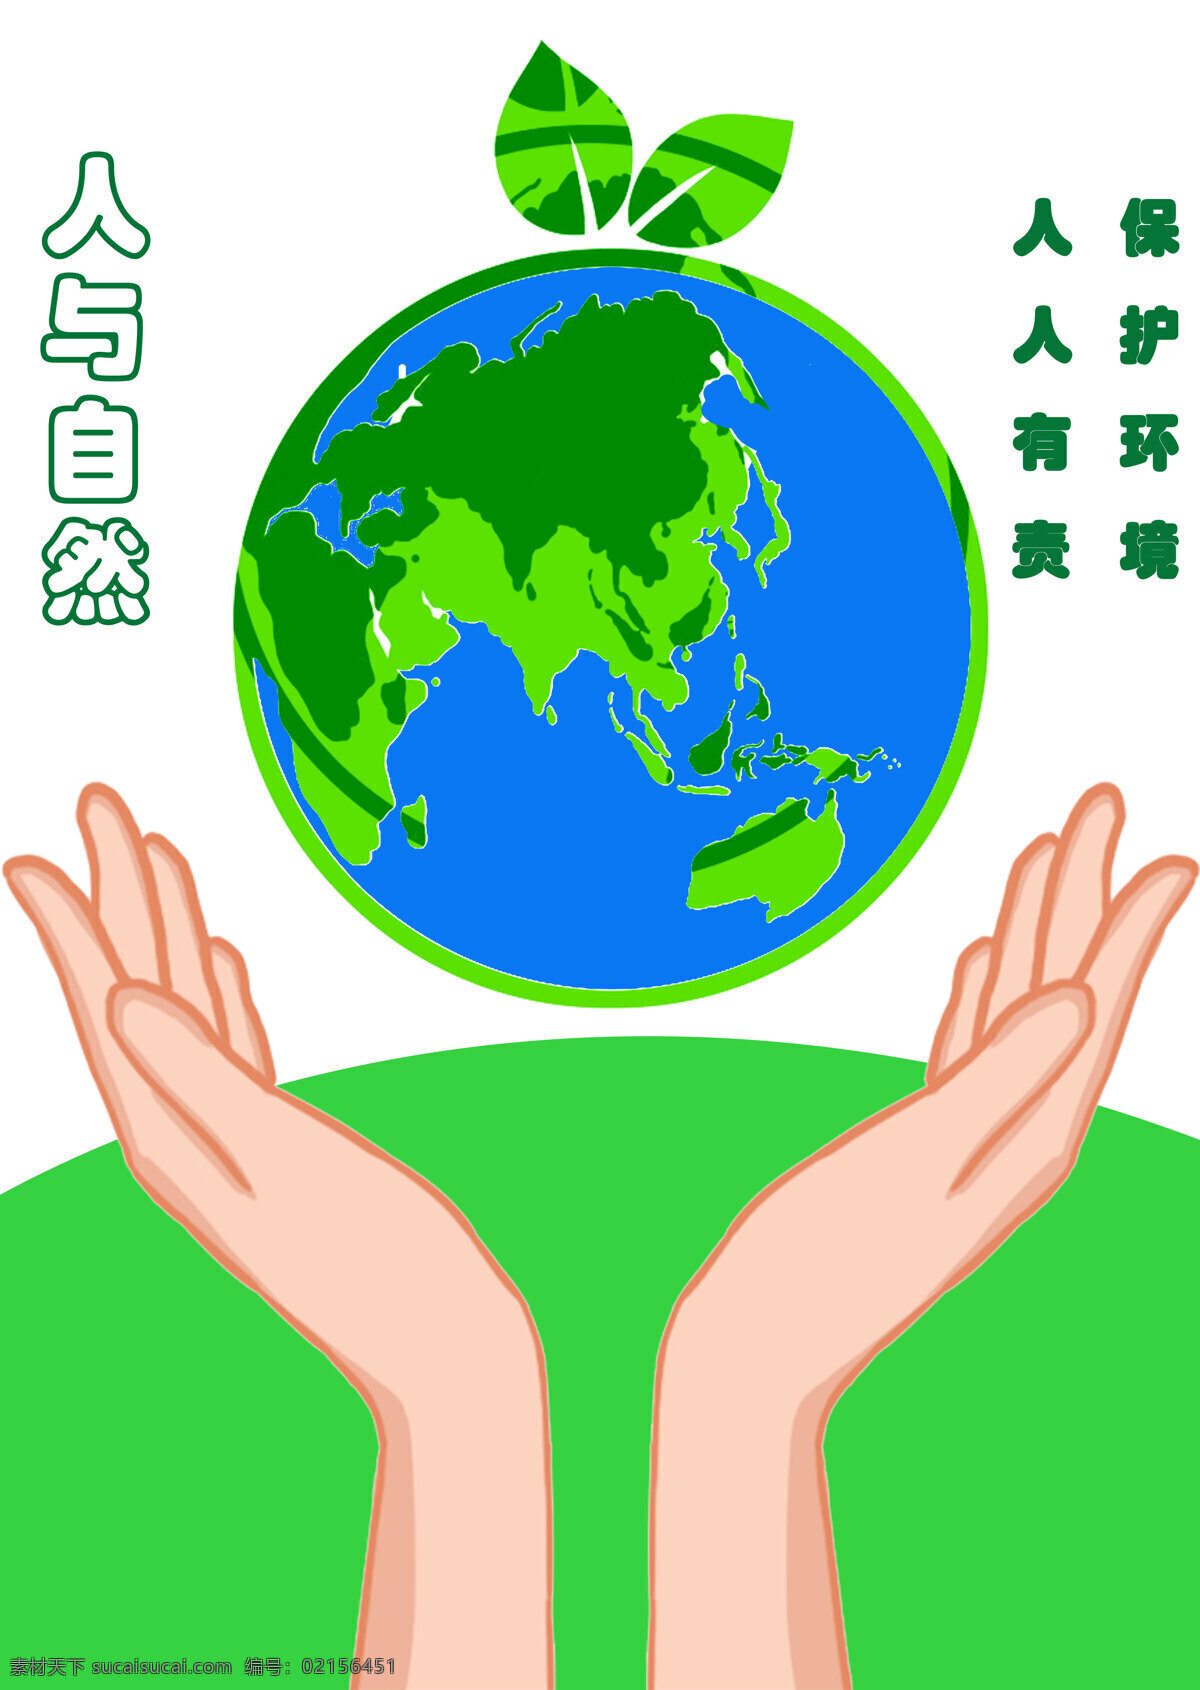 公益海报图片 自然 地球 公益 环境 人与自然 标志图标 公共标识标志